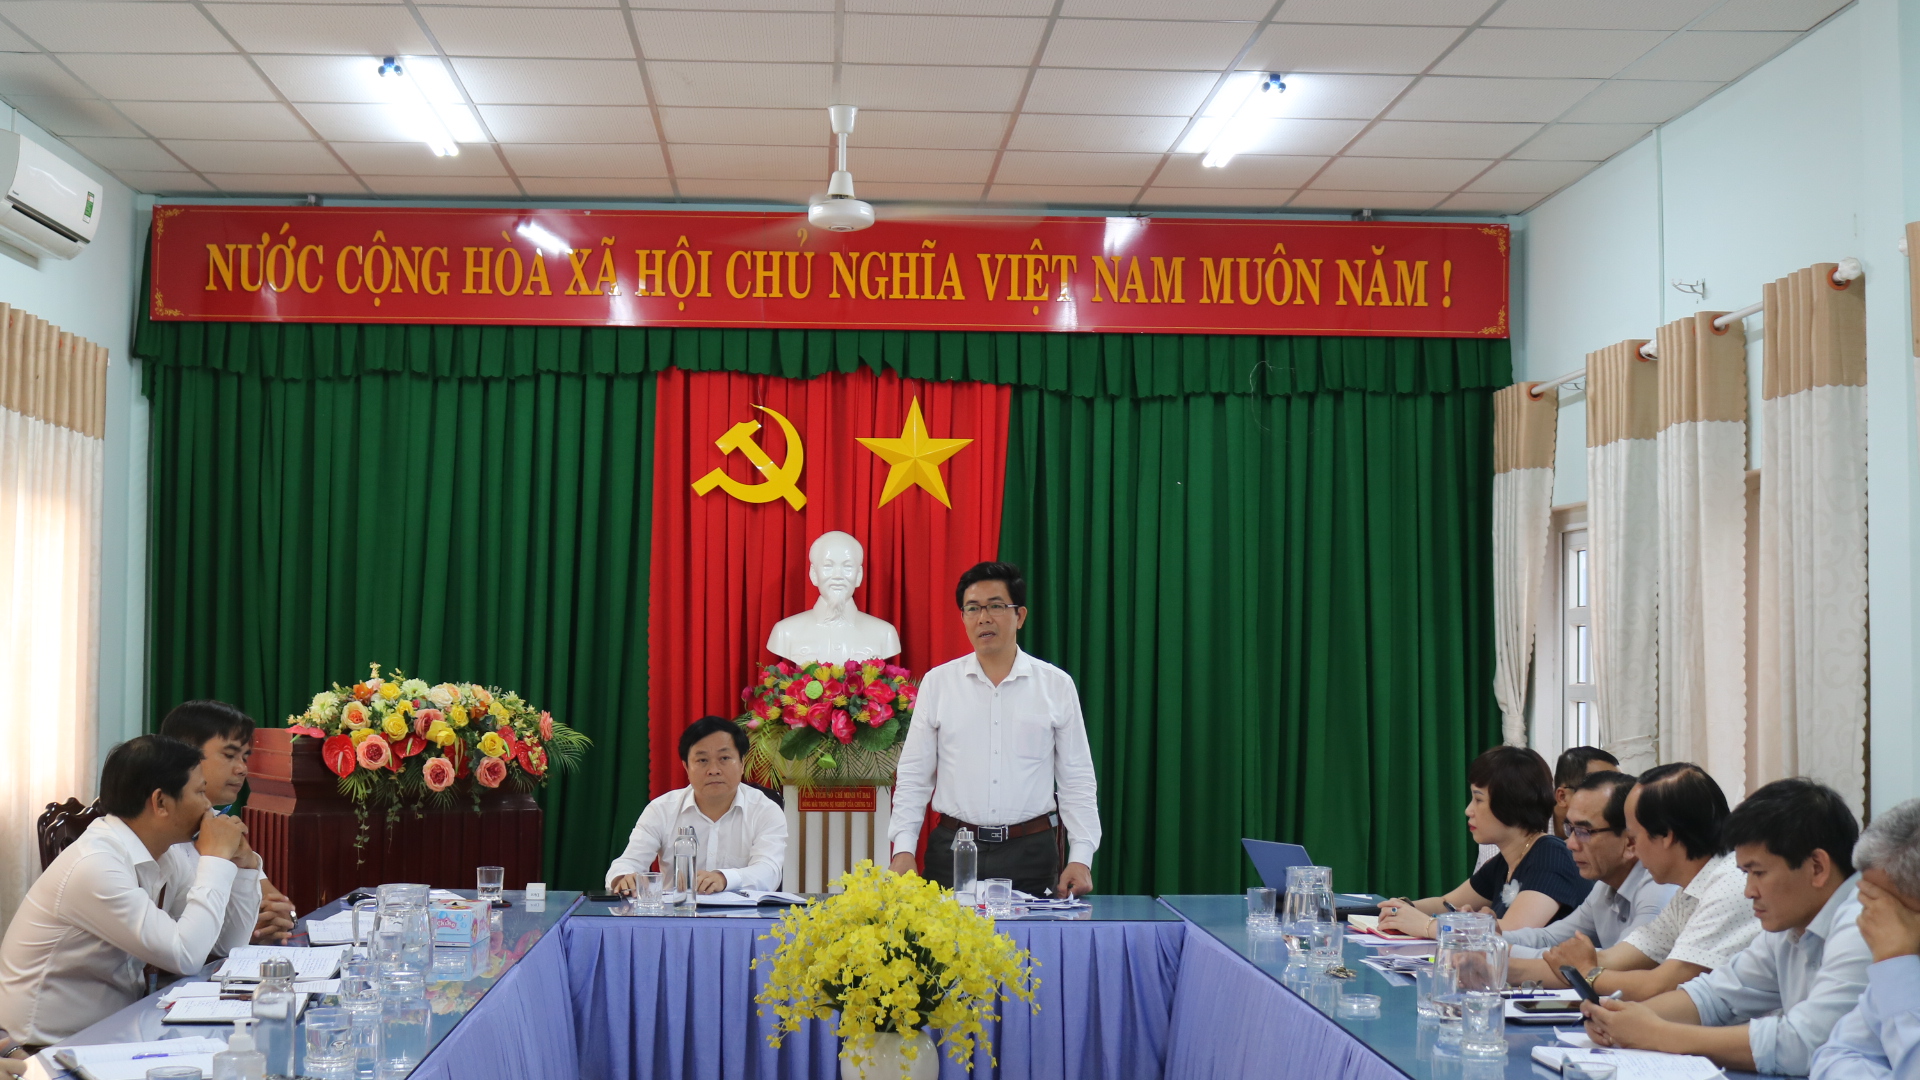 Chủ tịch UBND huyện Tư Nghĩa Nguyễn Đăng Vinh làm việc với UBND thị trấn La Hà về tình hình phát triển kinh tế - xã hội